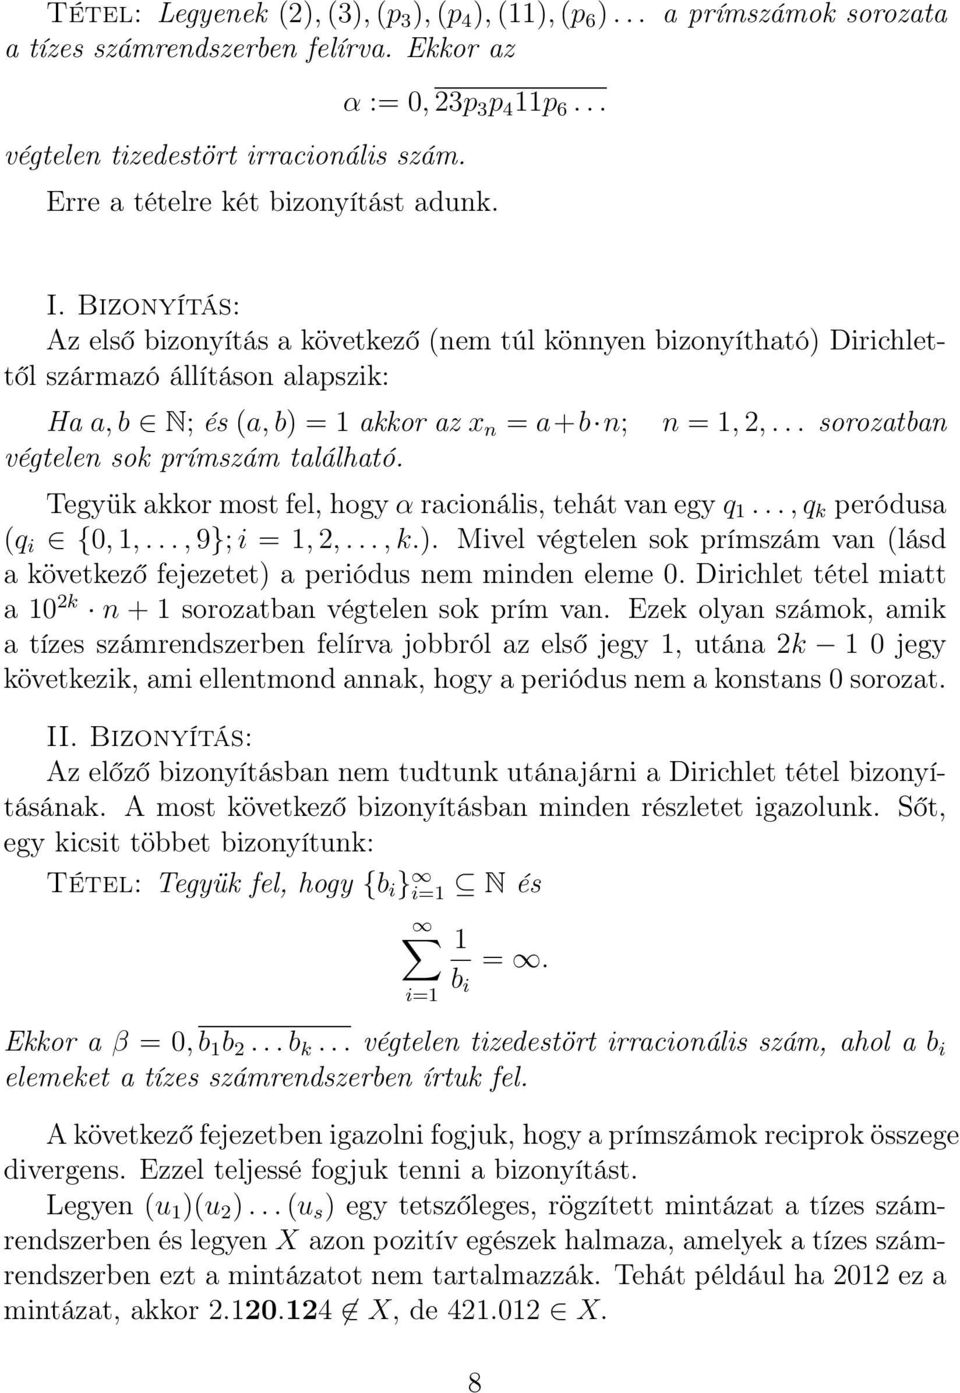 Bizonyítás: Az első bizonyítás a következő (nem túl könnyen bizonyítható Dirichlettől származó állításon alapszik: Ha a, b N; és (a, b = 1 akkor az x n = a+b n; végtelen sok prímszám található.